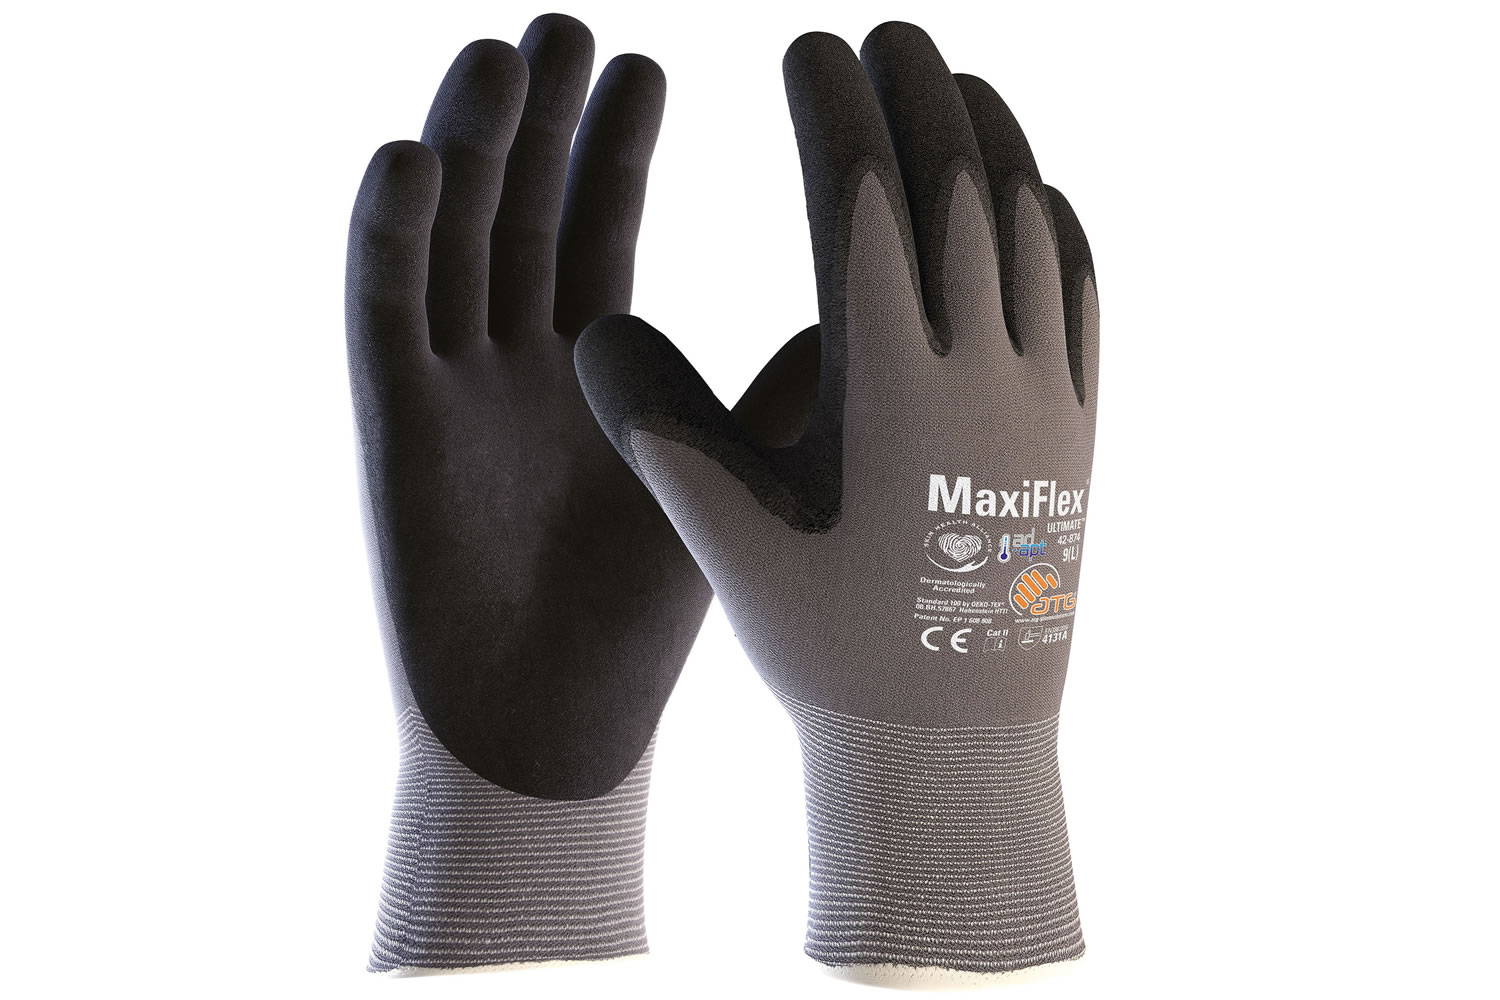 MaxiFlex Cut 34-8743 Glove